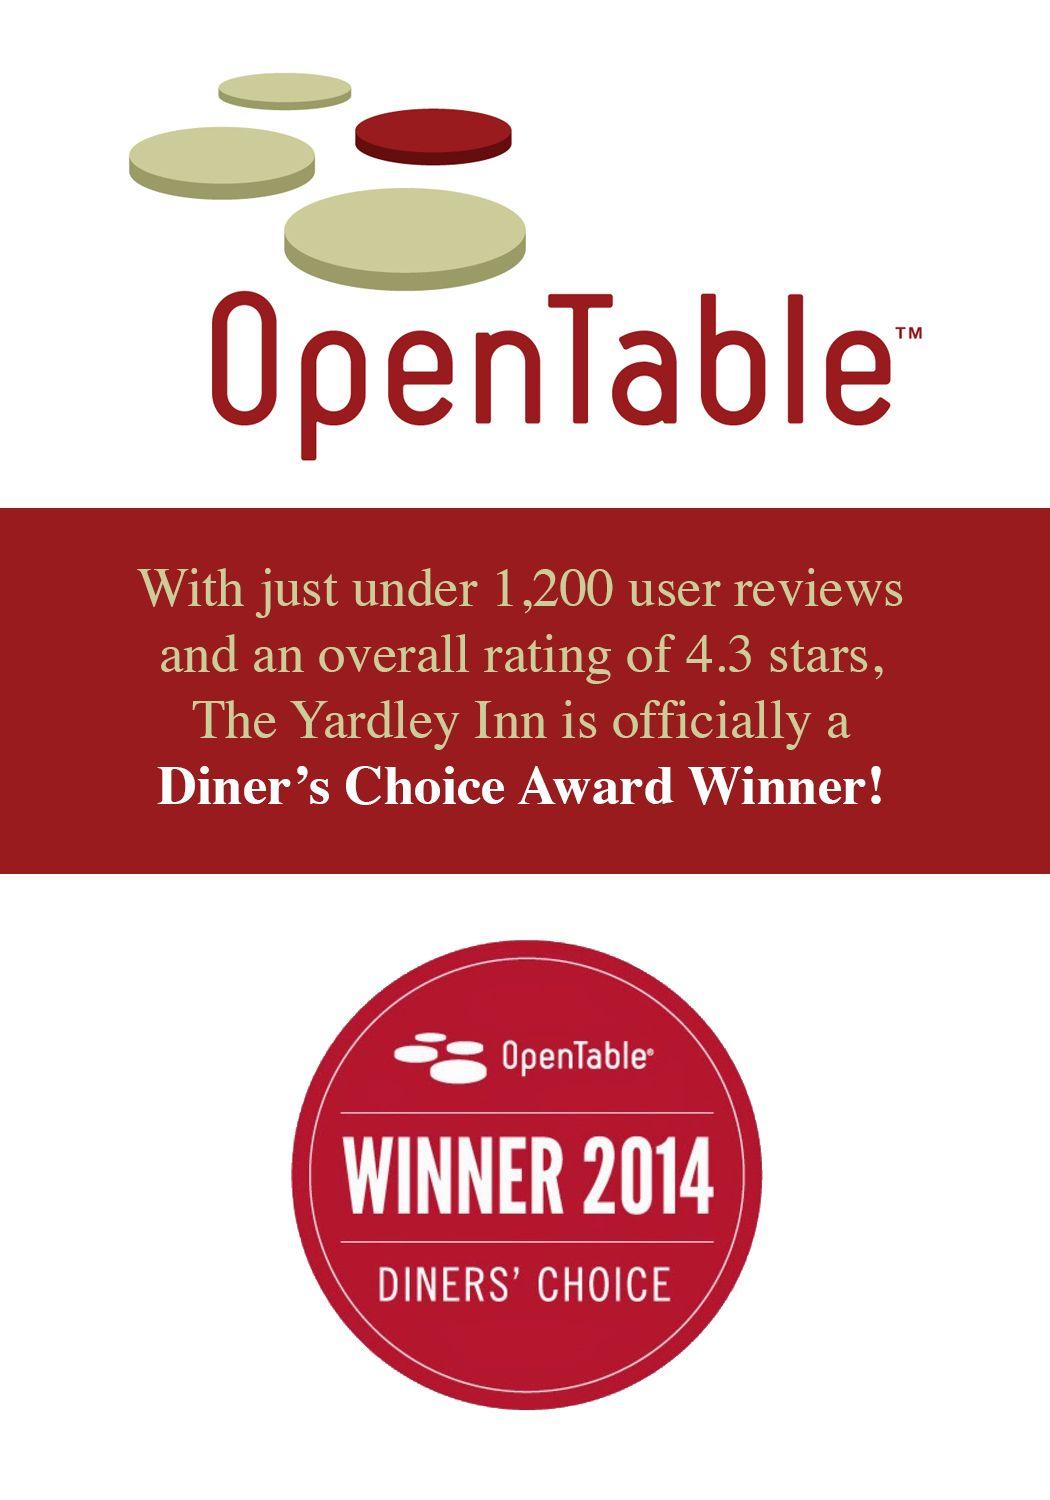 OpenTable Winner Logo - OpenTable Review 2014. The Yardley Inn